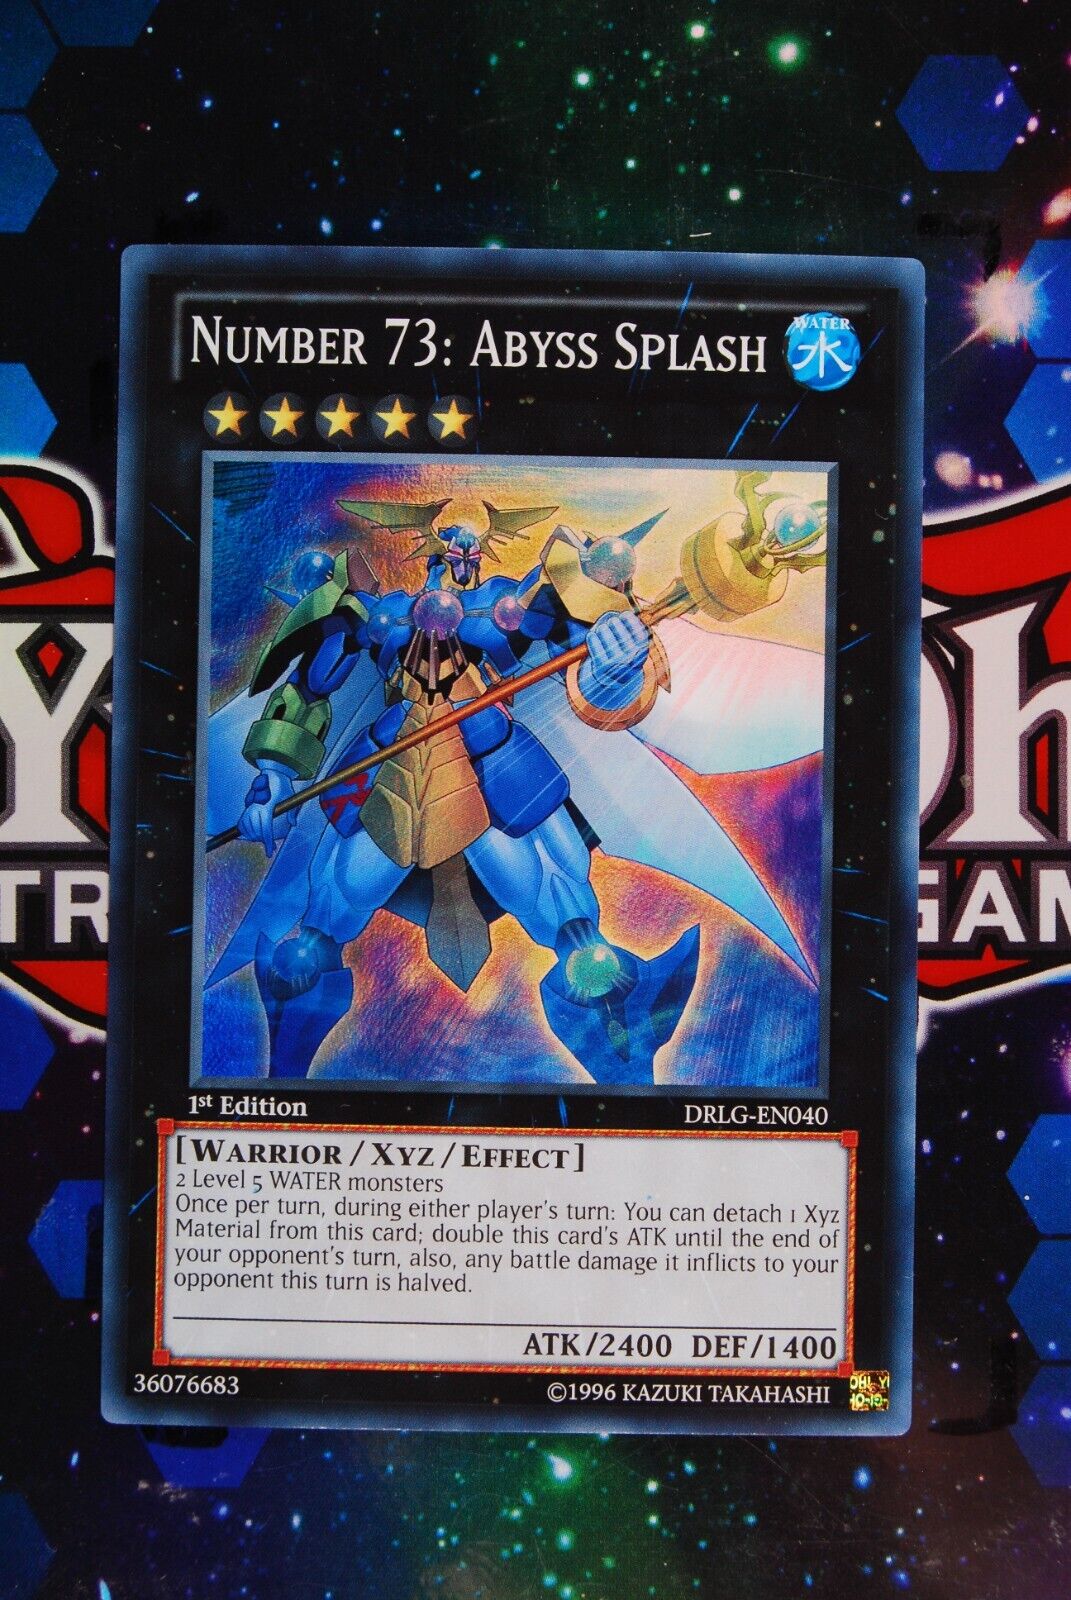 Number 73: Abyss Splash DRLG-EN040 1st Edition Super Rare Yugioh Card